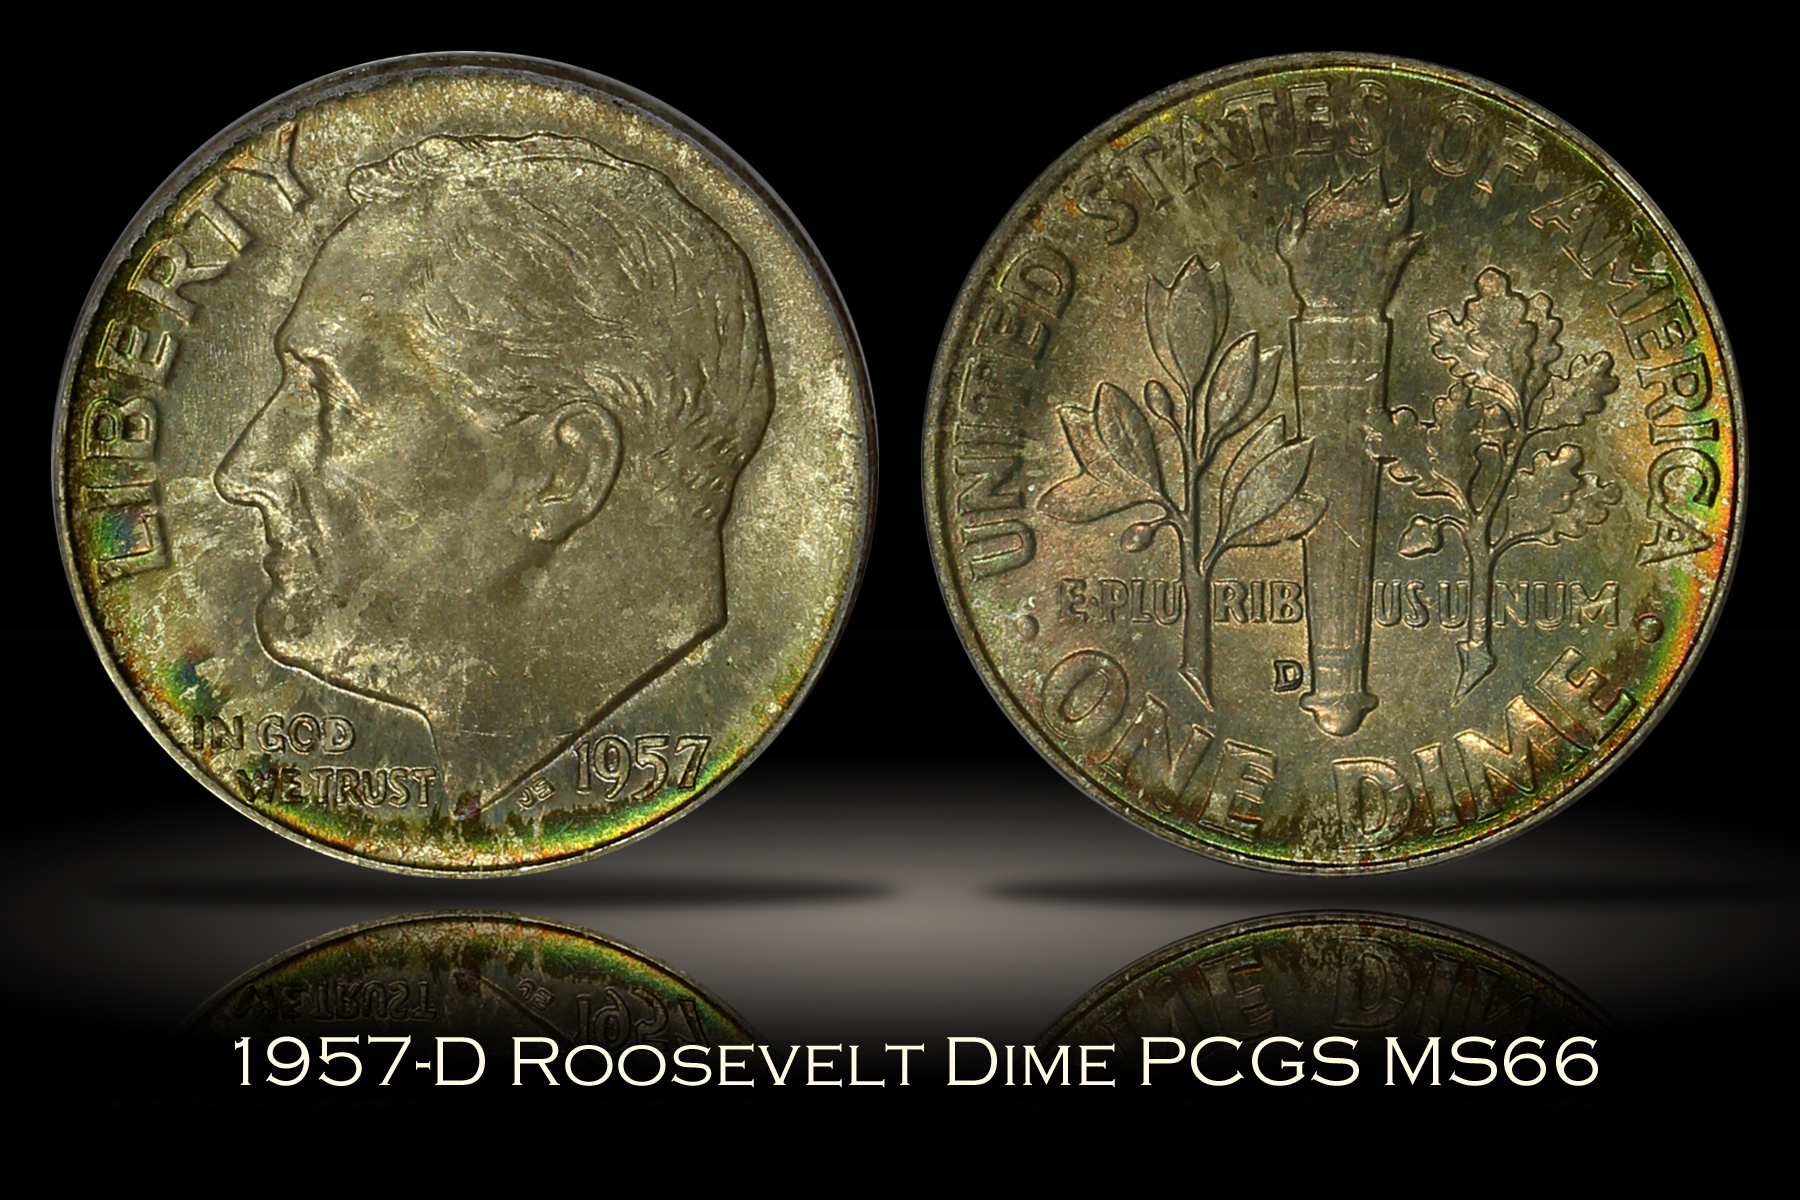 1957-D Roosevelt Dime PCGS MS66